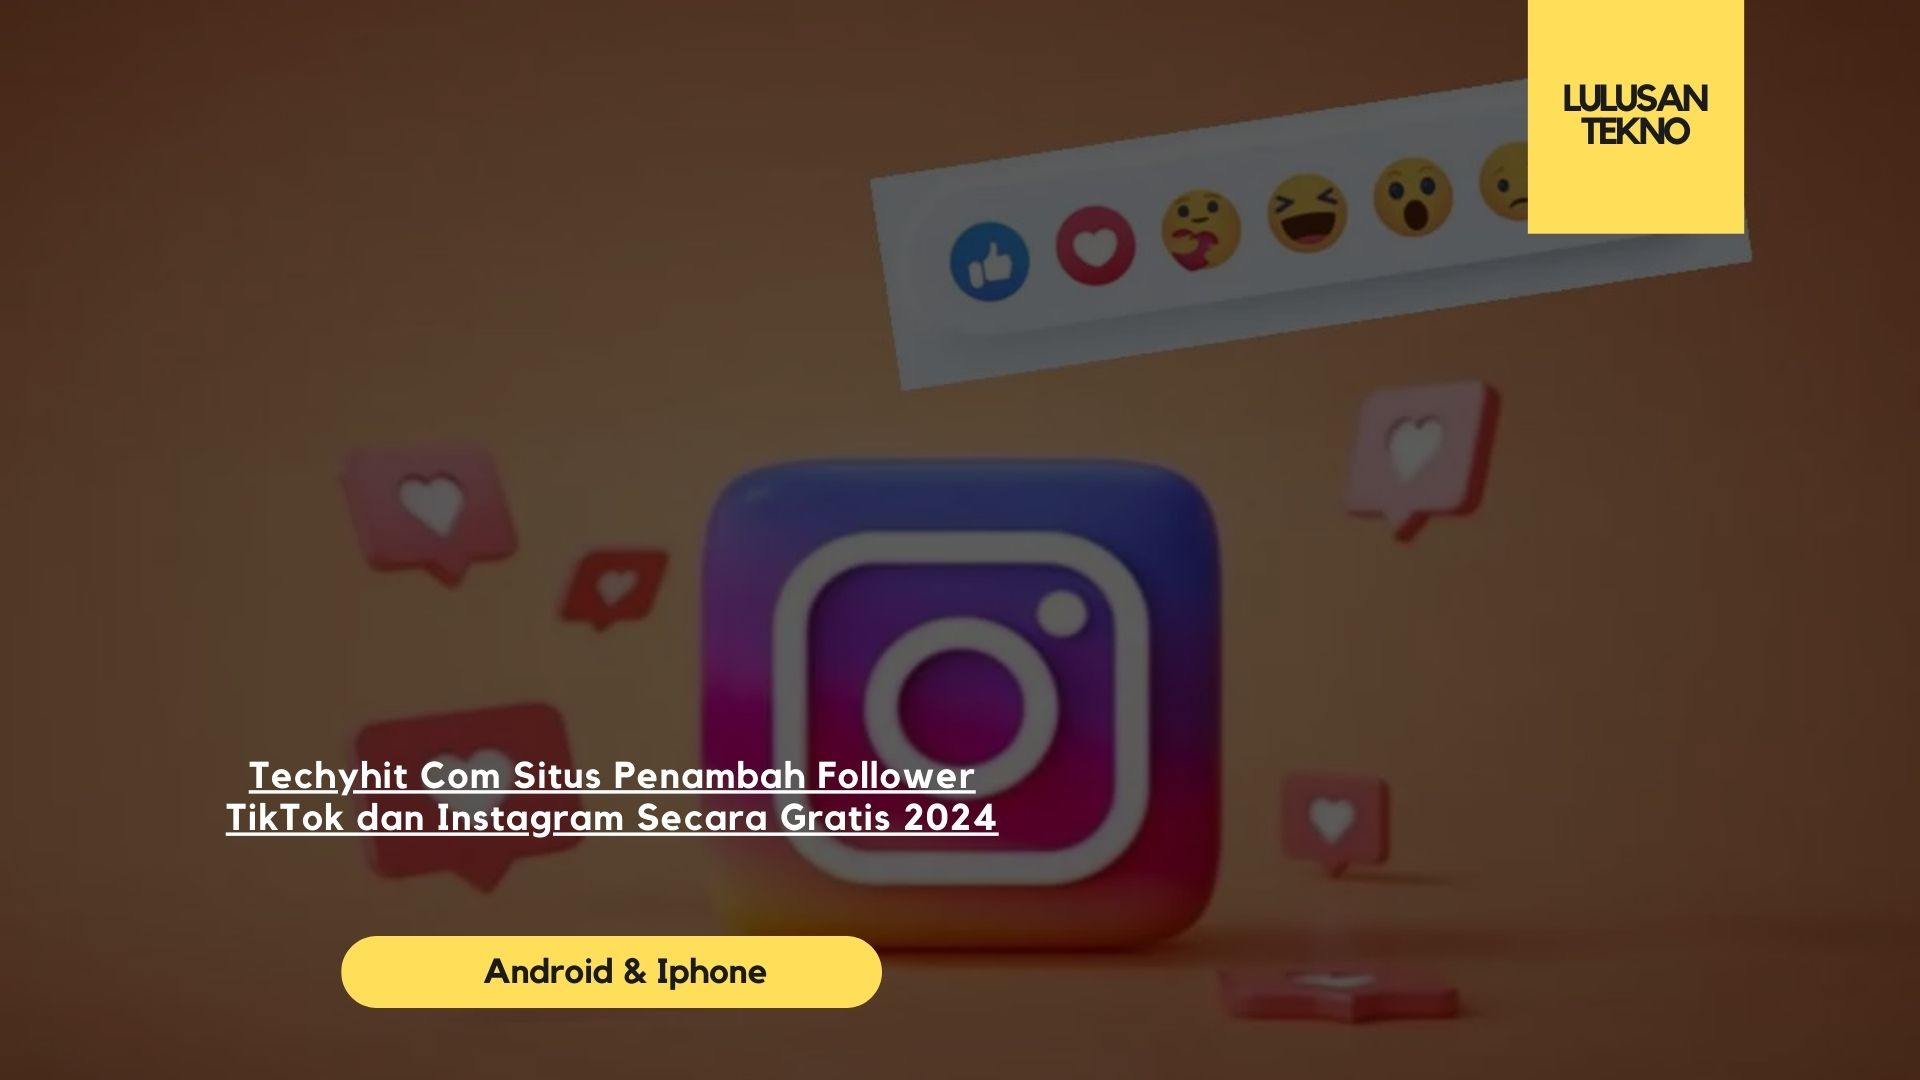 Techyhit Com Situs Penambah Follower TikTok dan Instagram Secara Gratis 2024